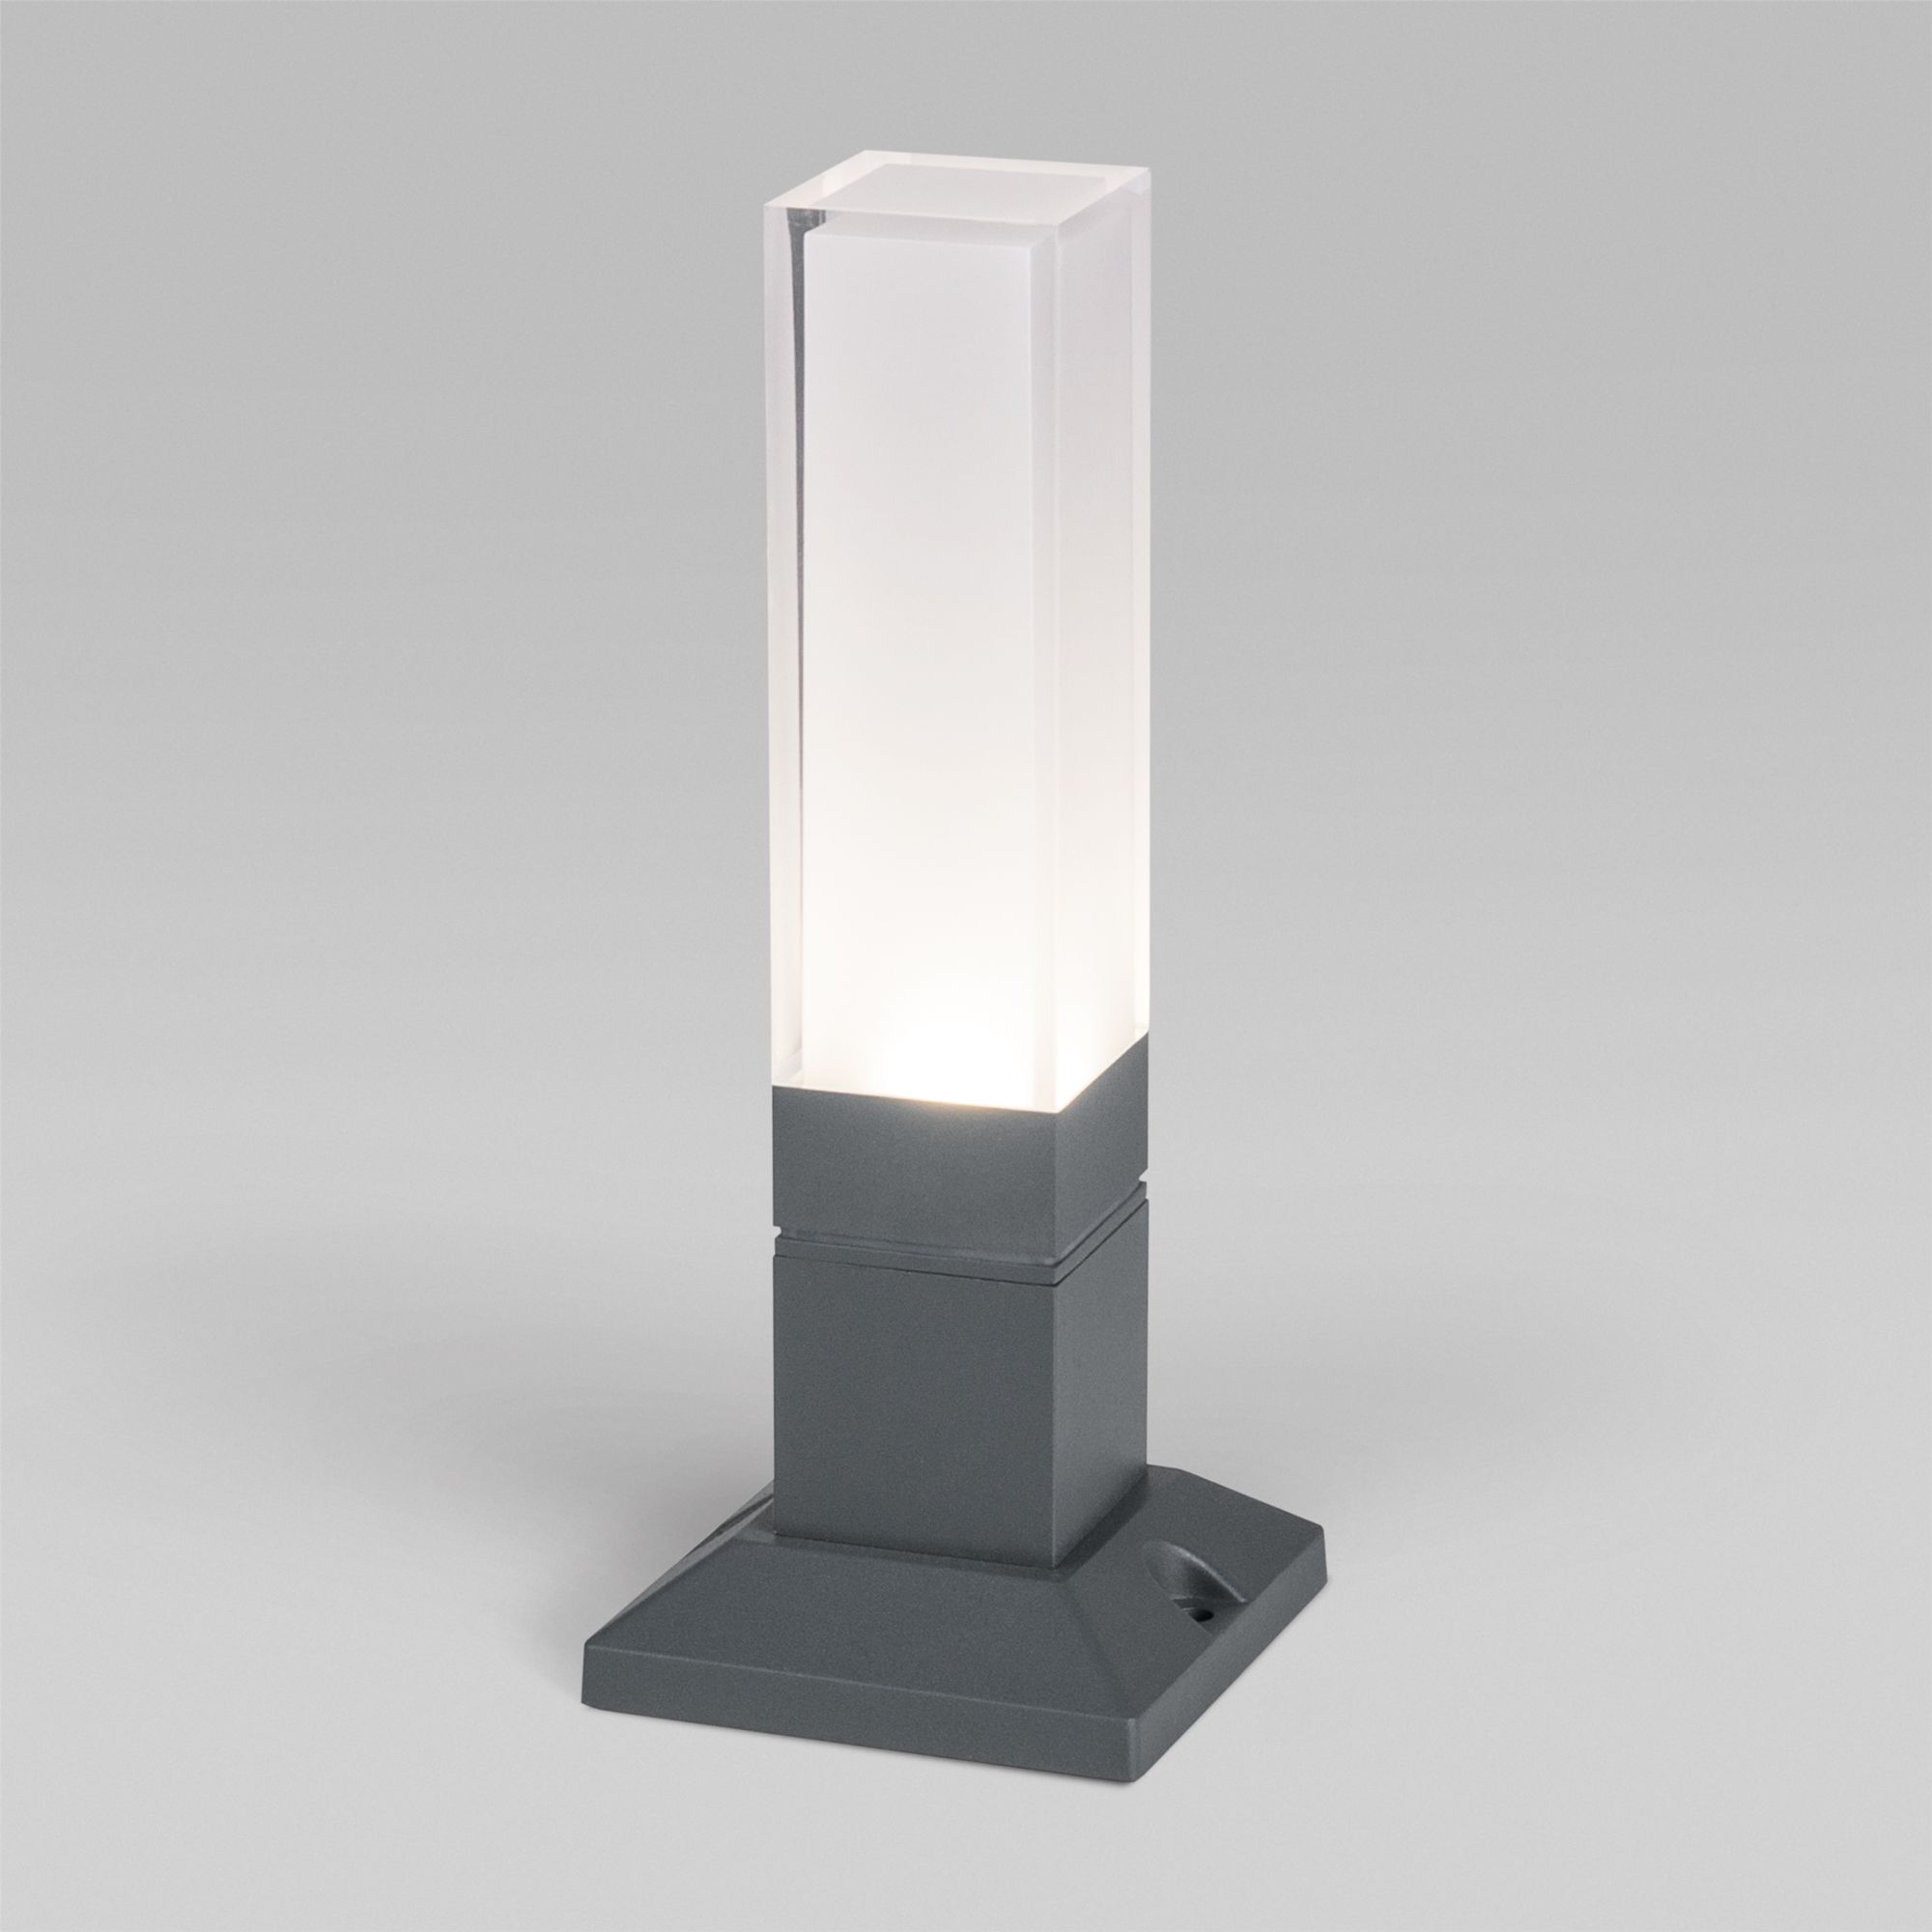 Ландшафтный светодиодный светильник серый IP54 1536 TECHNO LED